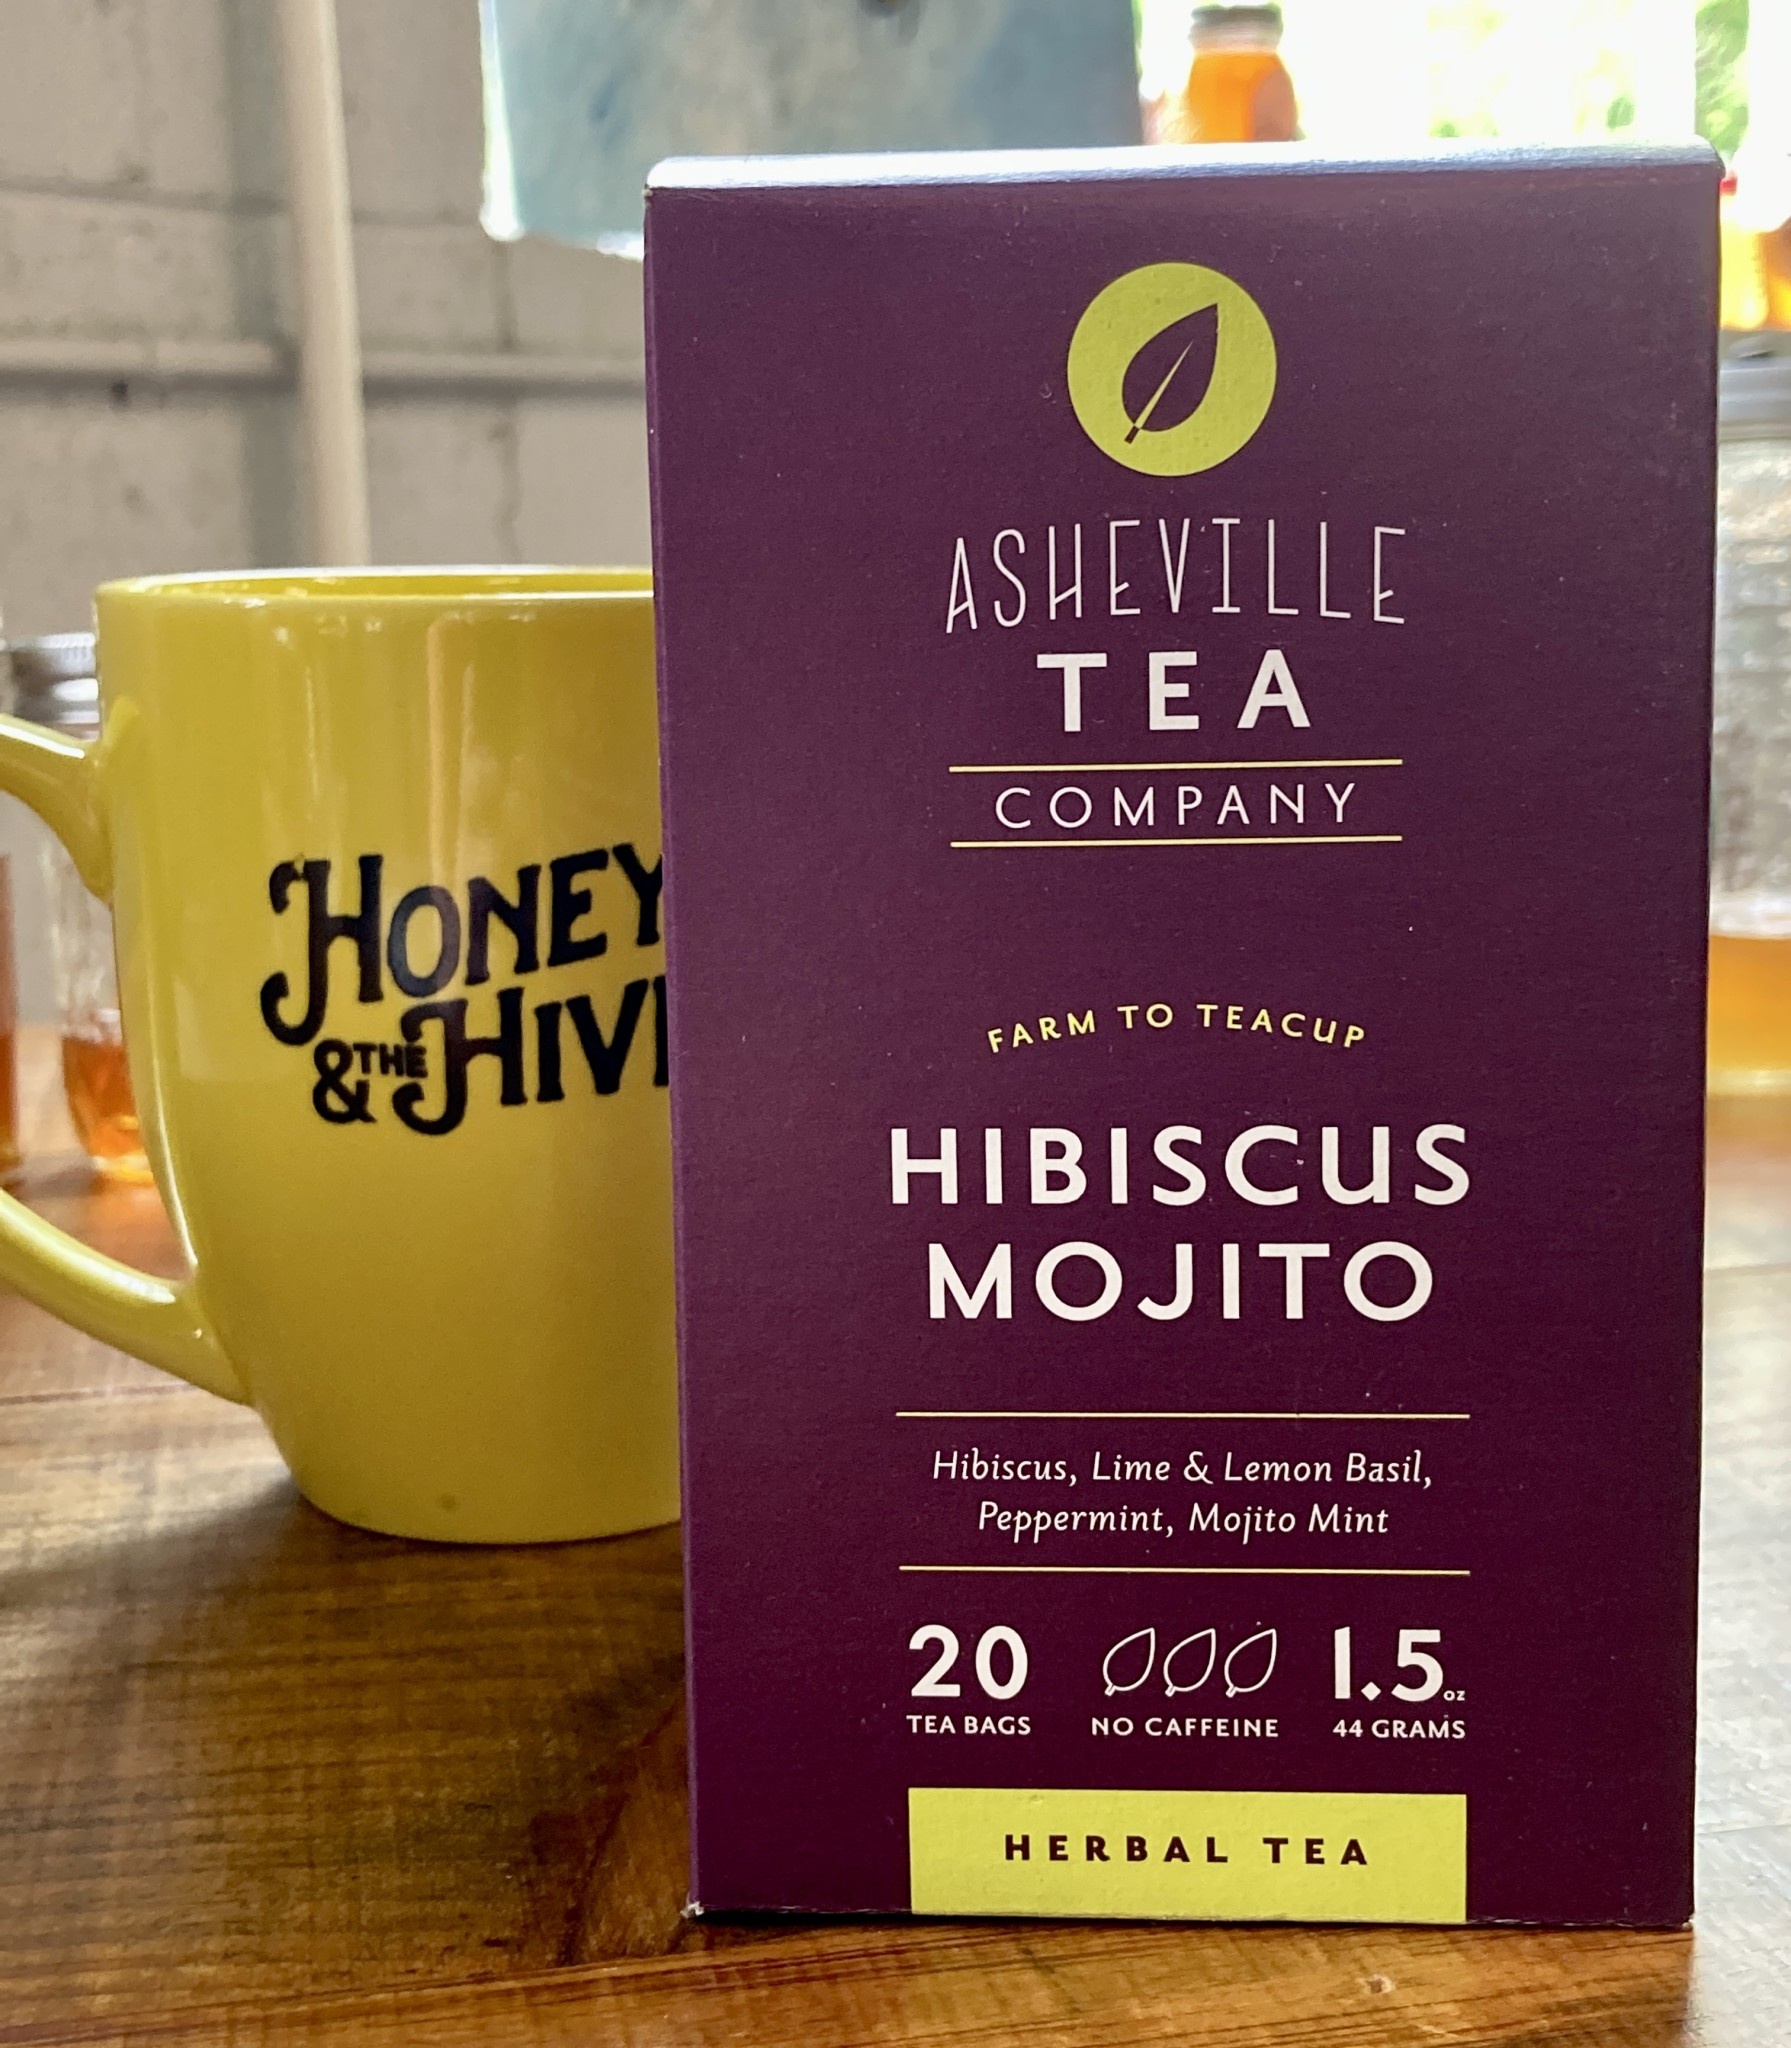 Asheville Tea Company Asheville Tea Company Hibiscus Mojito Herbal Tea, box of 20 tea bags